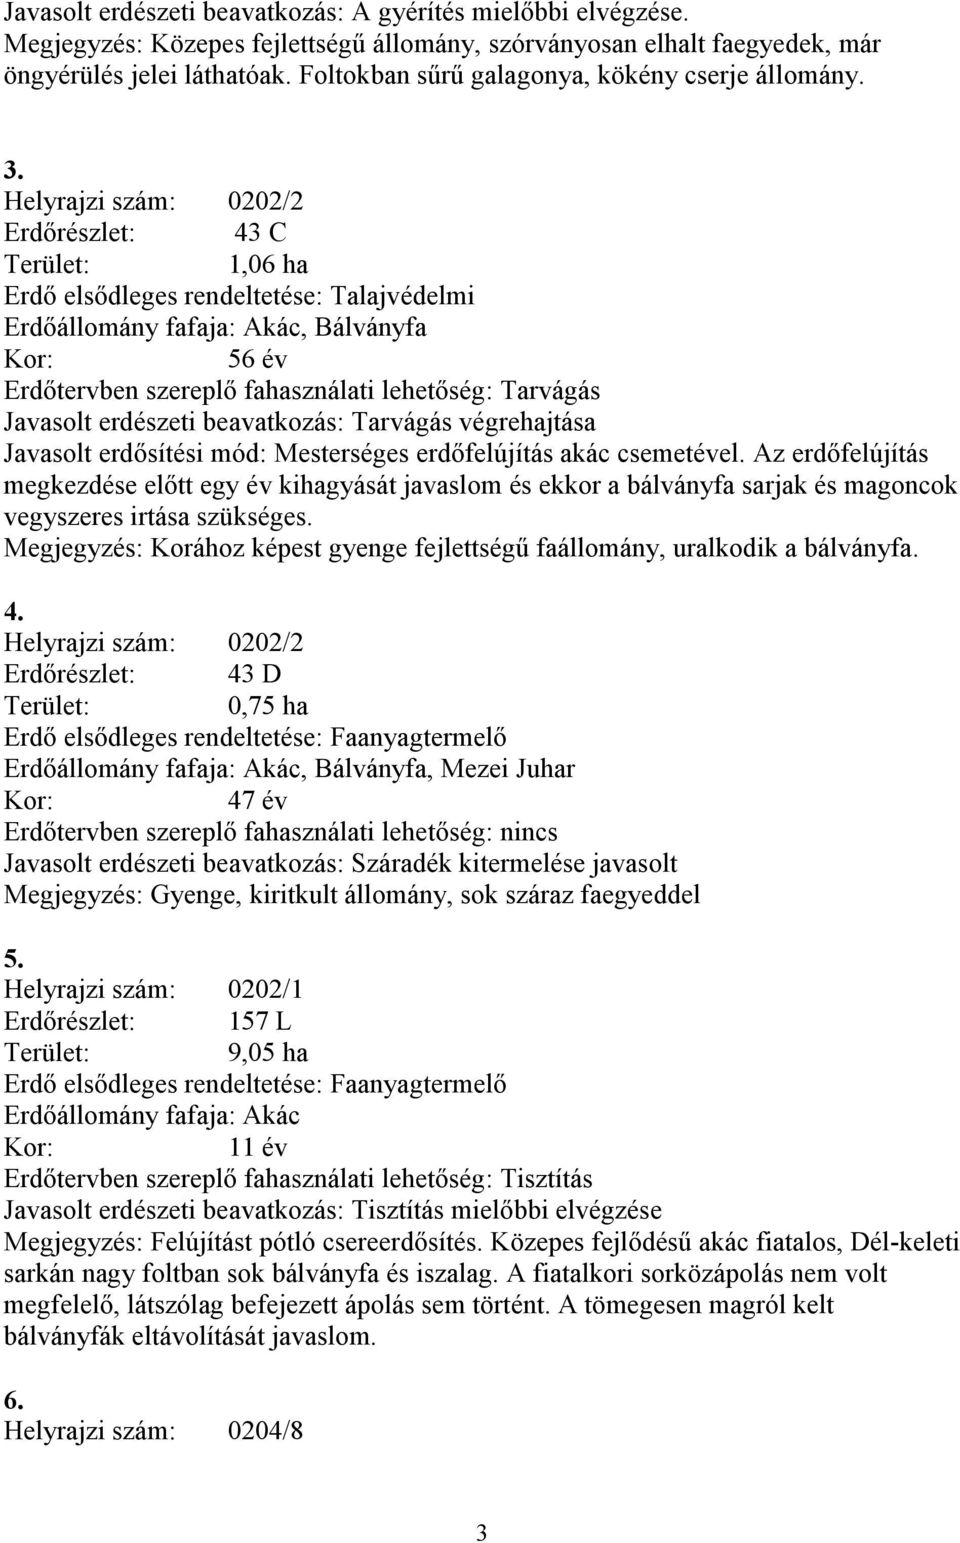 Helyrajzi szám: 0202/2 Erdőrészlet: 43 C Terület: 1,06 ha Erdő elsődleges rendeltetése: Talajvédelmi Erdőállomány fafaja: Akác, Bálványfa Kor: 56 év Erdőtervben szereplő fahasználati lehetőség: